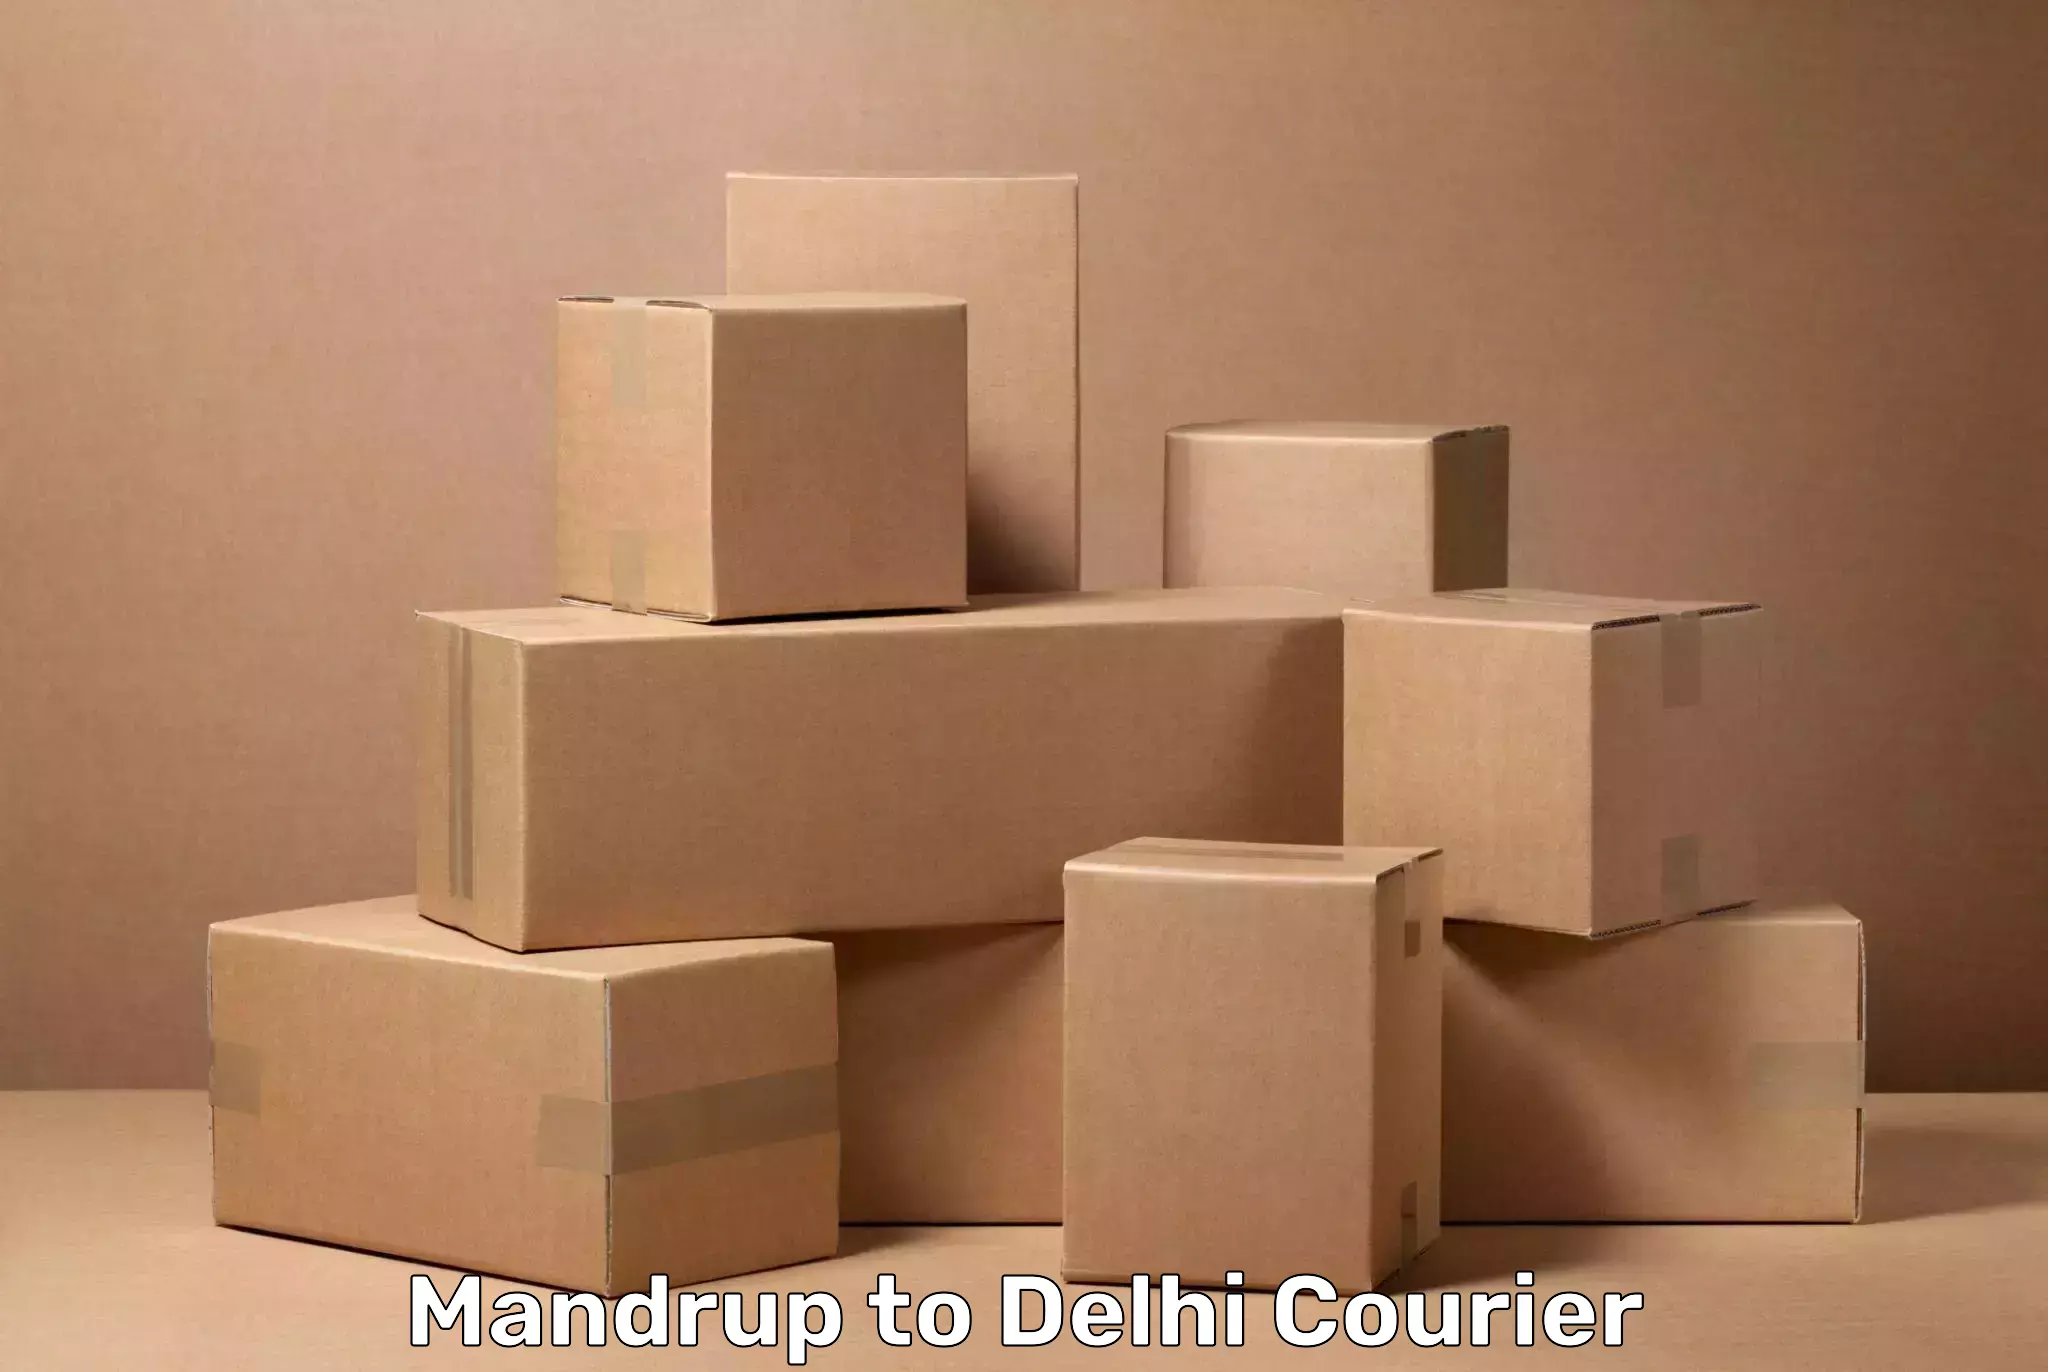 Baggage transport network Mandrup to NIT Delhi